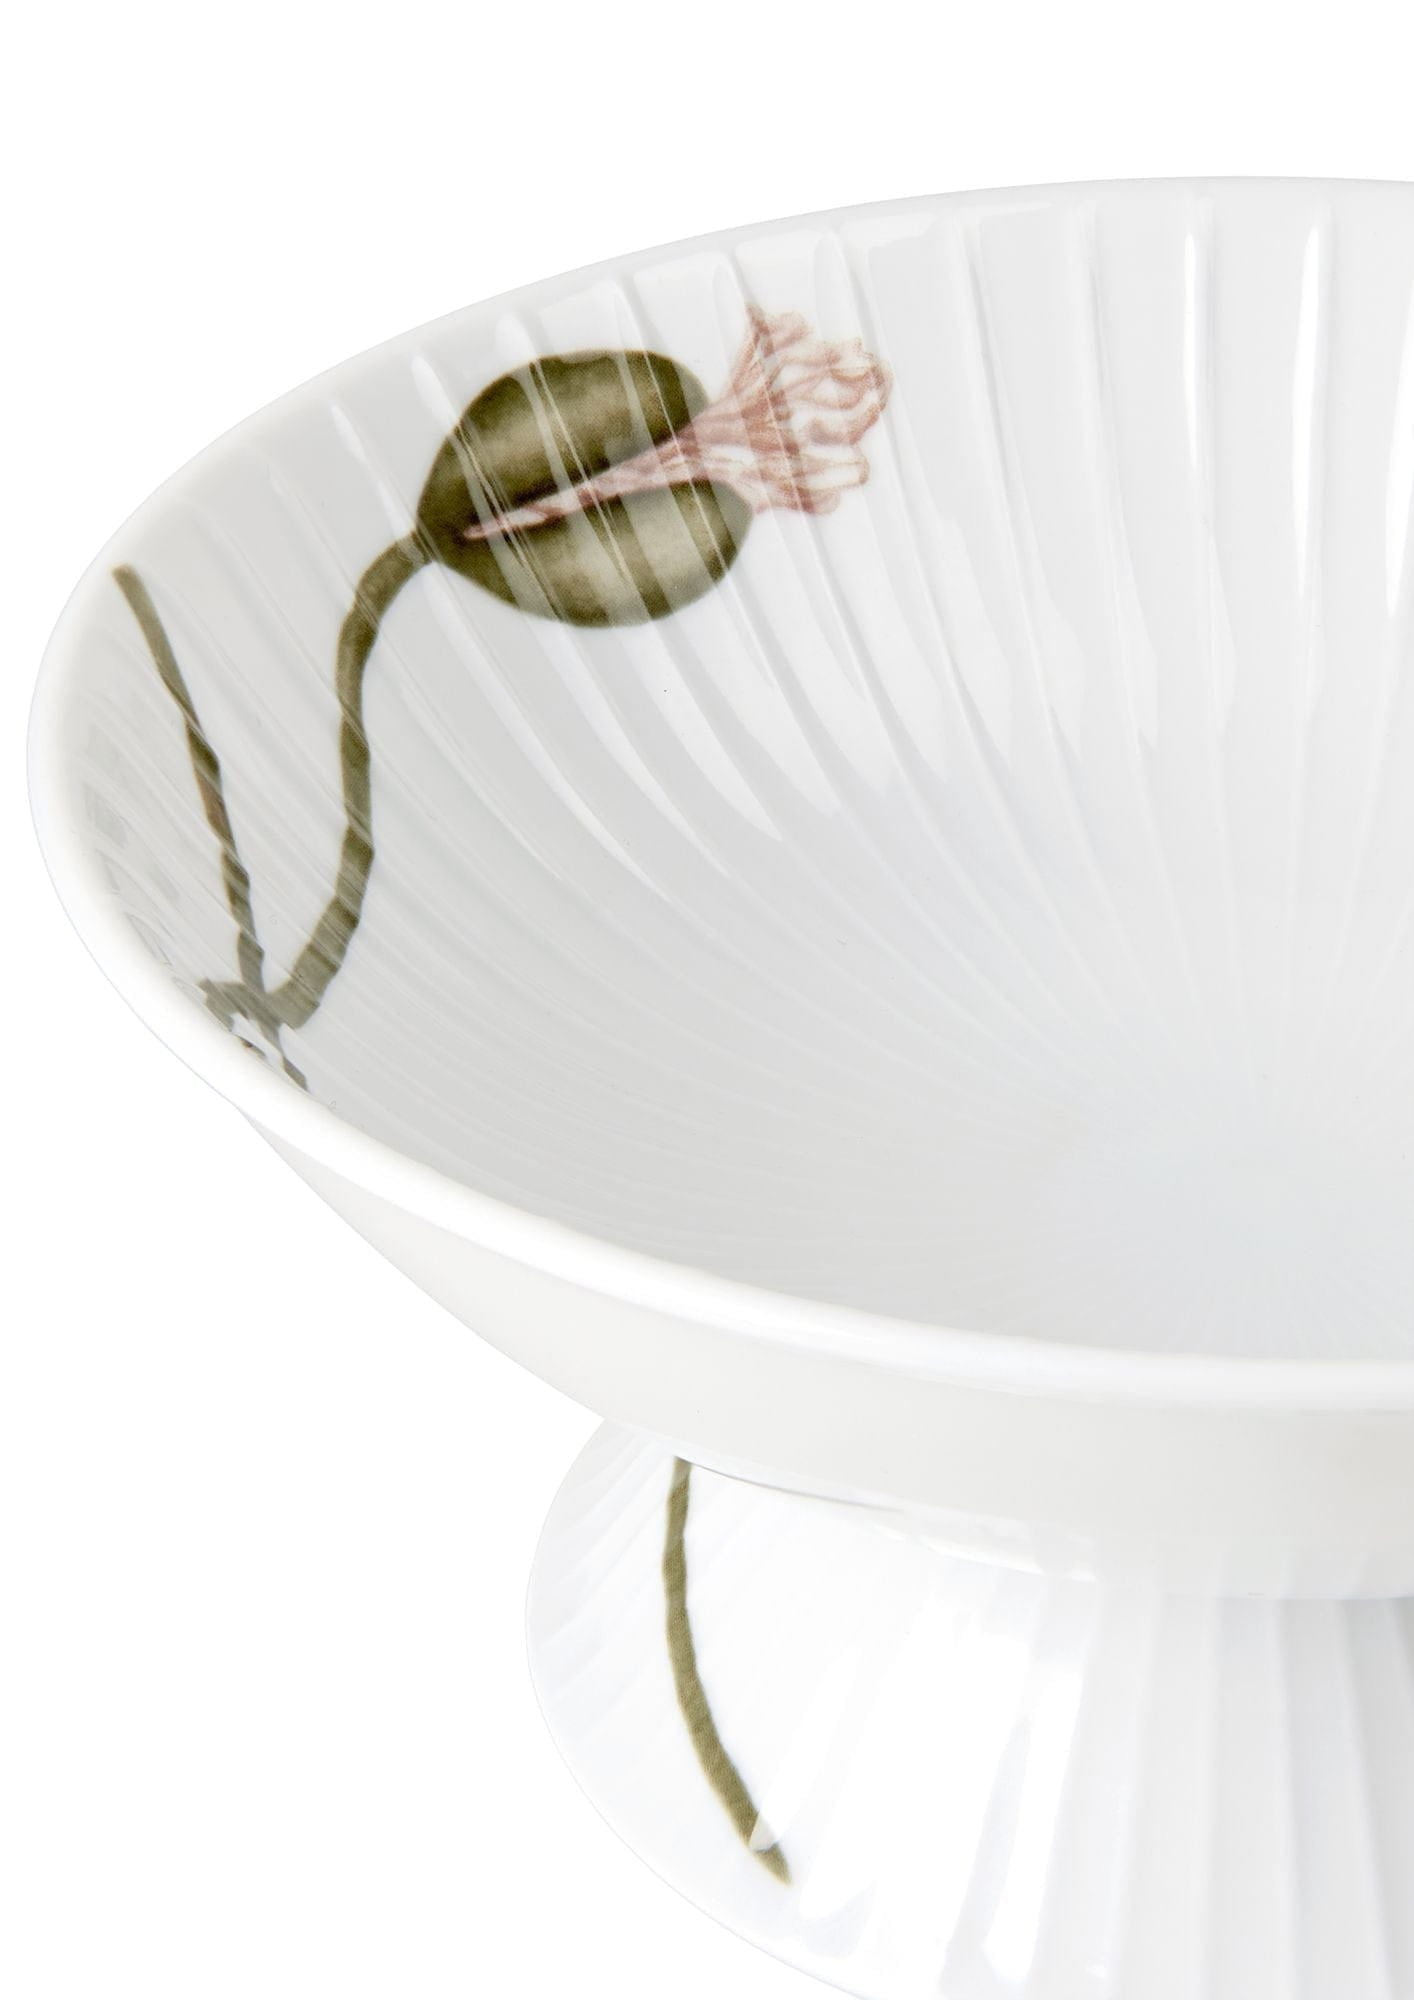 Kähler Hammershøi Poppy Bowl till fots Ø16 cm, vit med dekoration